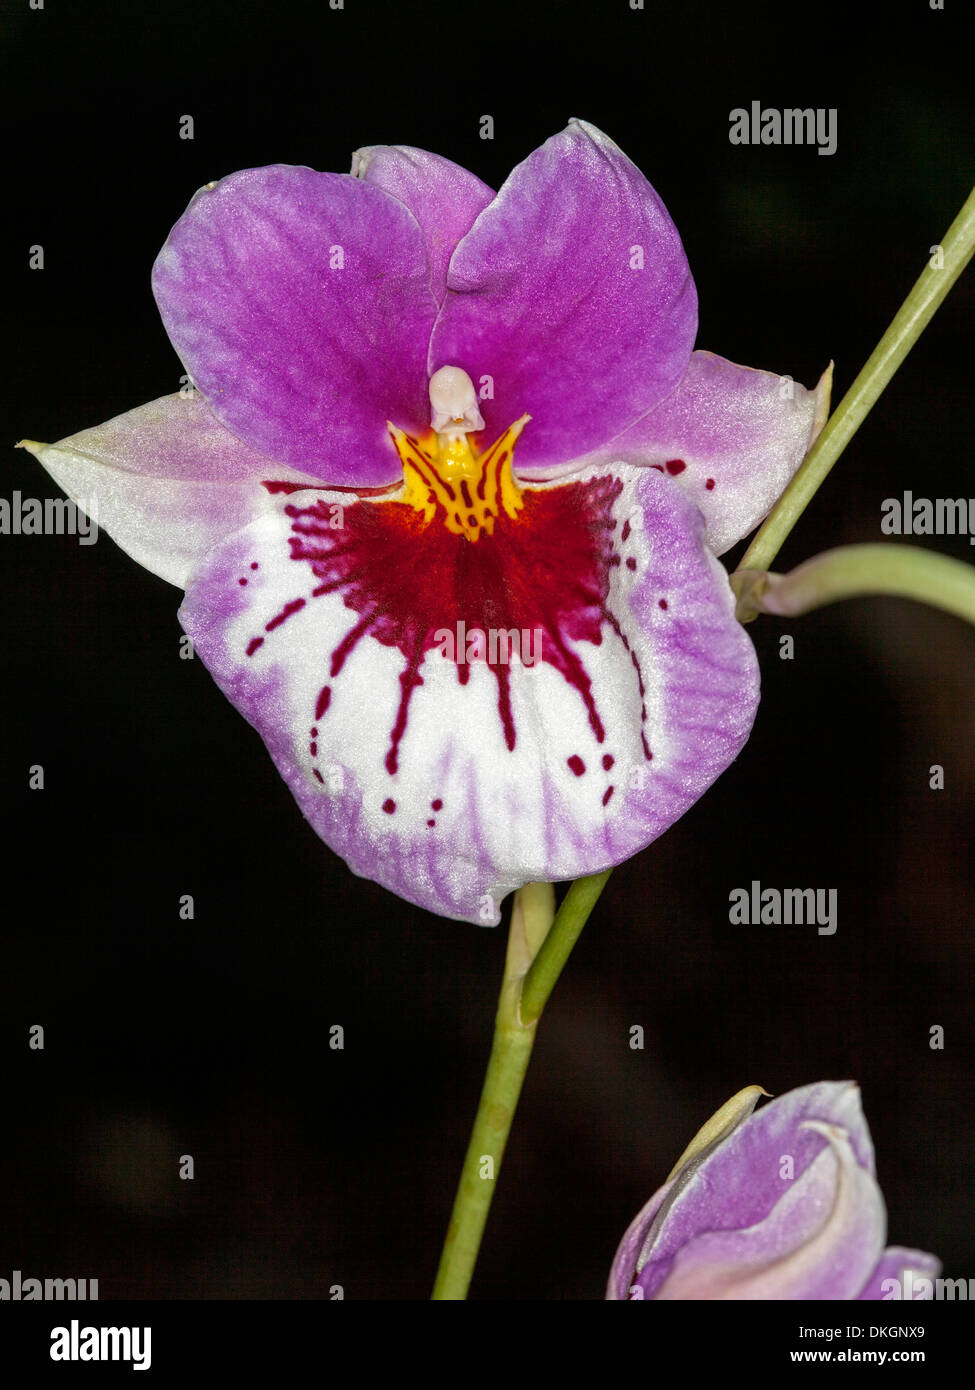 Violet et Blanc spectaculaire de fleurs orchidée Miltoniopsis pansy dans la 'rose' 'voluptueuse' sur un fond sombre Banque D'Images